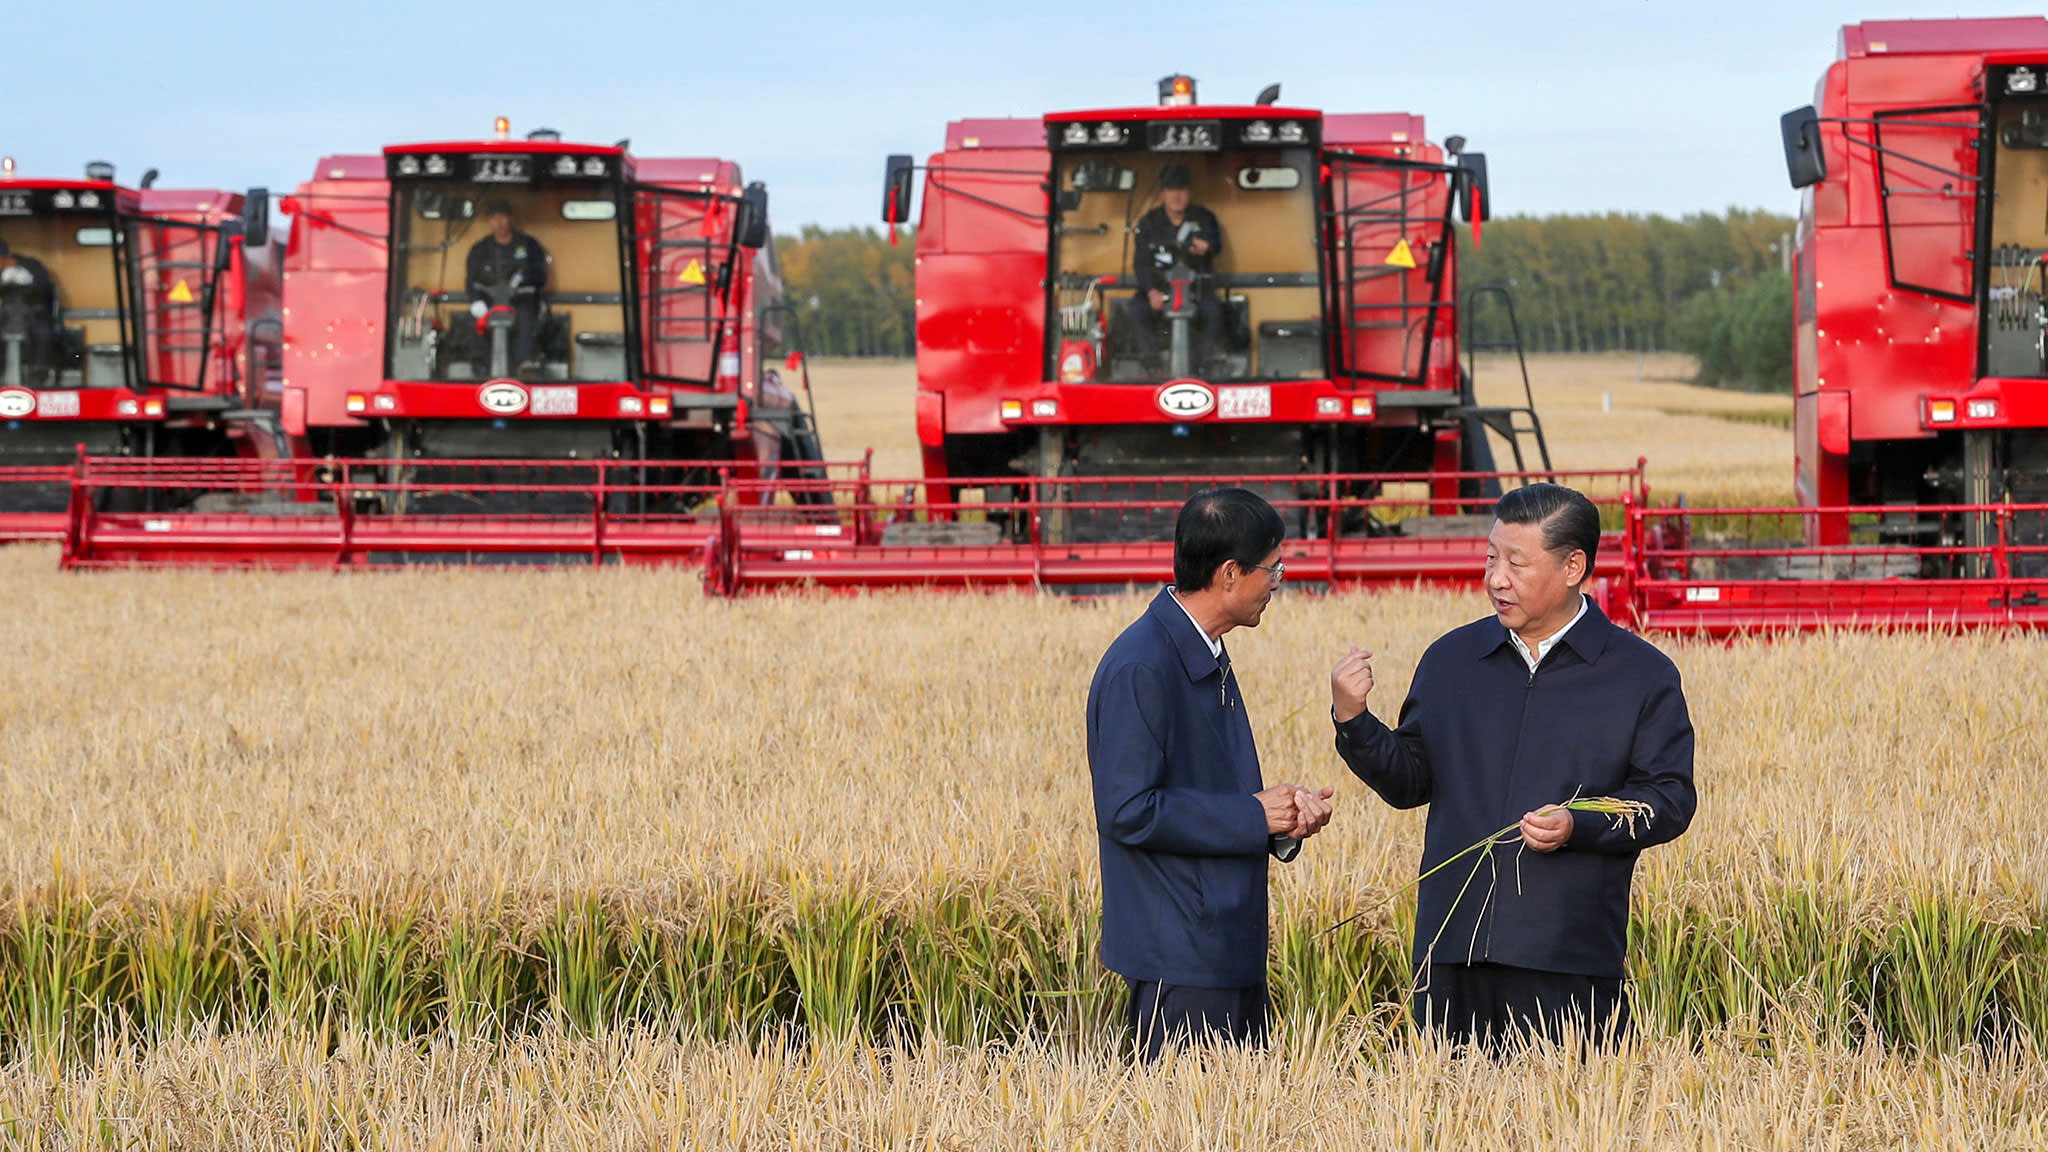 Çin, yurtdışı gıda lojistik altyapısıyla da küreselleşiyor